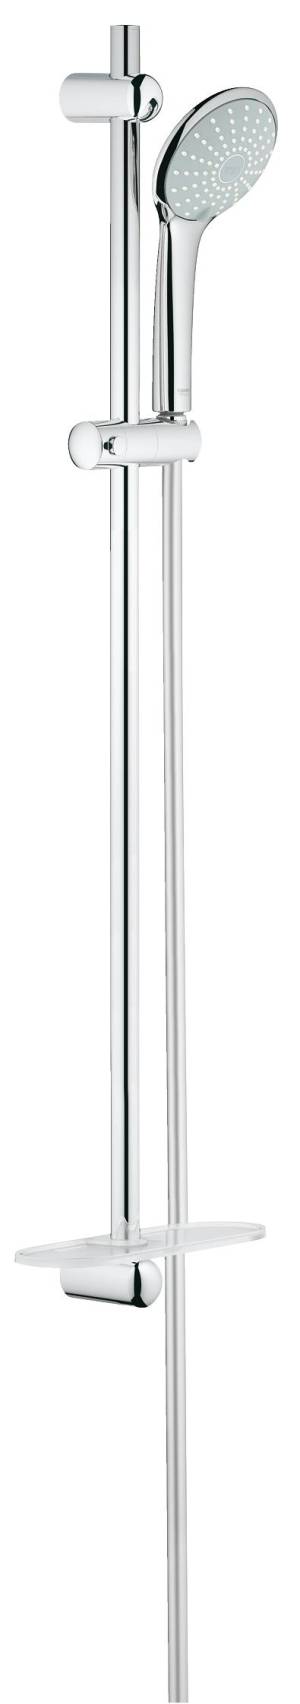 Душевой гарнитур GROHE Euphoria 110 Duo с полочкой (ручной душ, штанга 900 мм, шланг 1750 мм), хром (27225001)